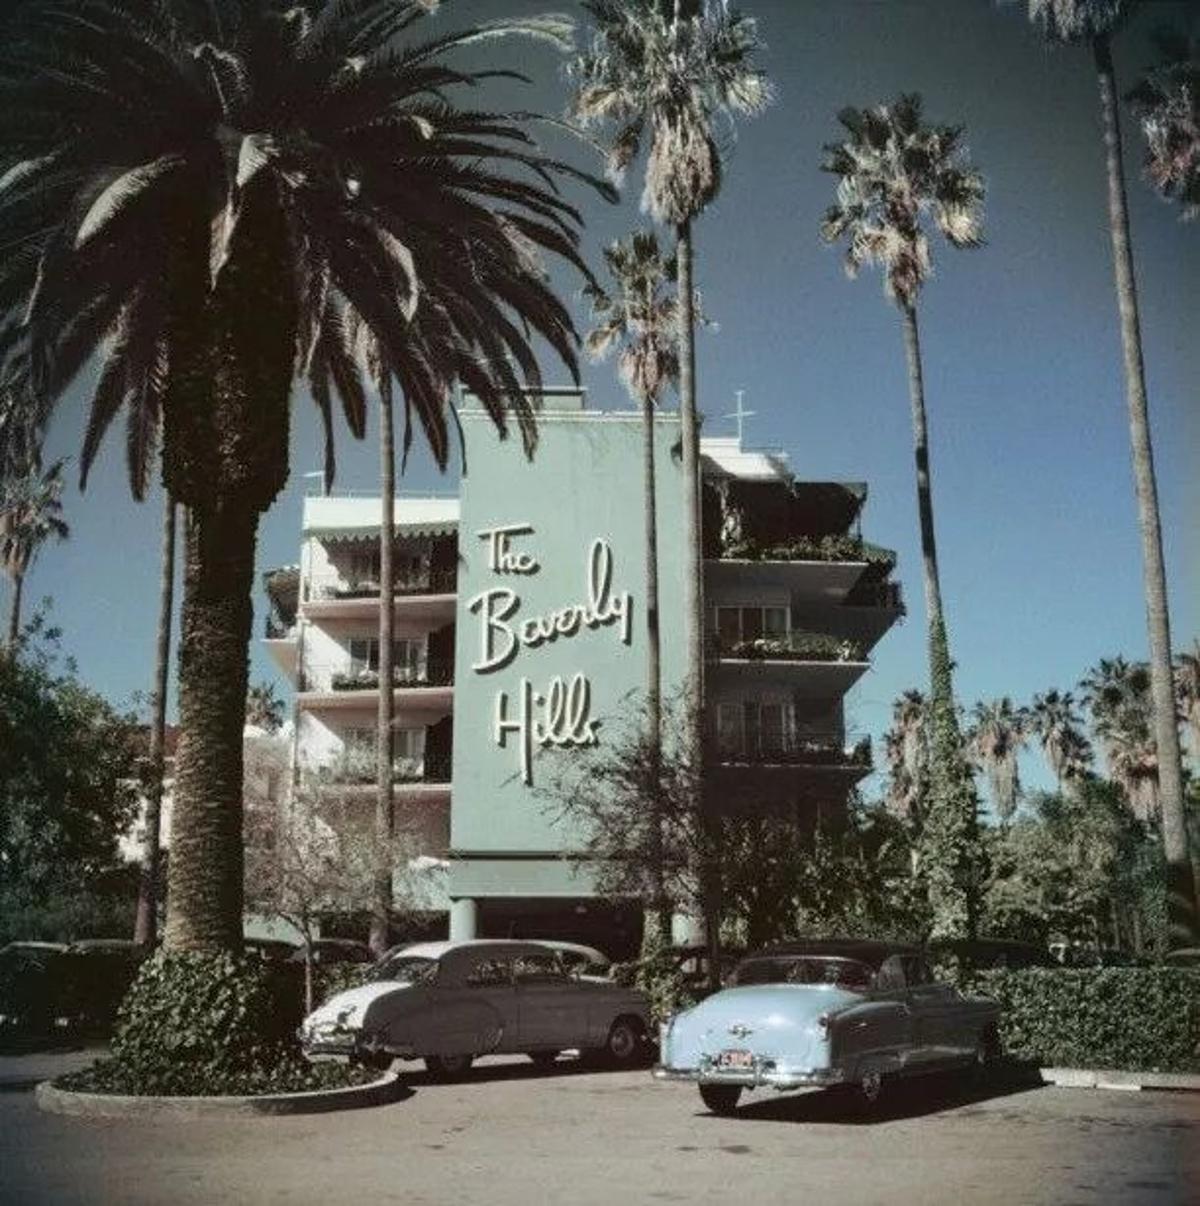 Beverly Hills Hotel 
1957
von Slim Aarons

gedruckt 2023
Slim Aarons Limited Estate Edition

Vor dem Beverly Hills Hotel am Sunset Boulevard in Kalifornien geparkte Autos, 1957

ungerahmt
C Typ Druck

auf der Vorderseite mit Tinte